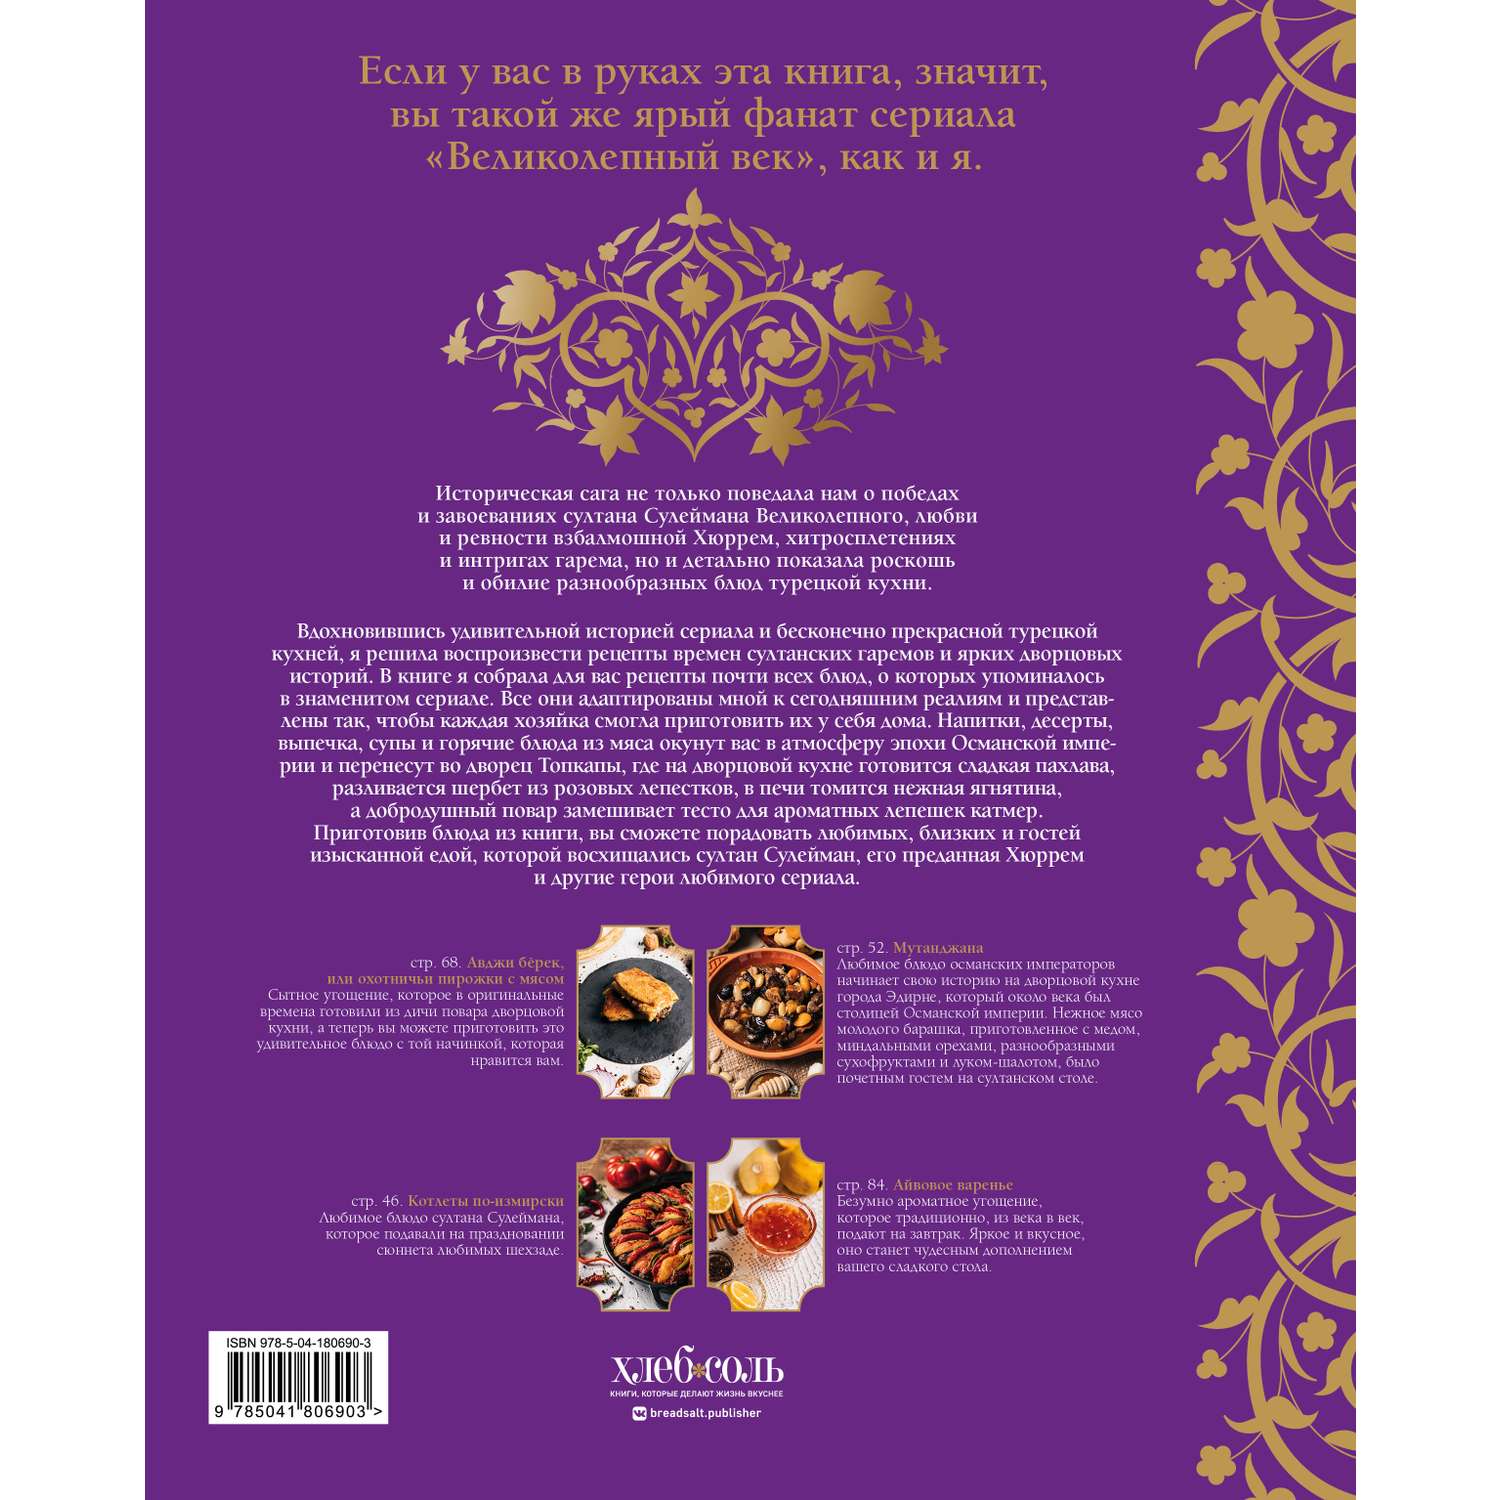 Книга Эксмо Великолепный век Неофициальная кулинарная книга - фото 10